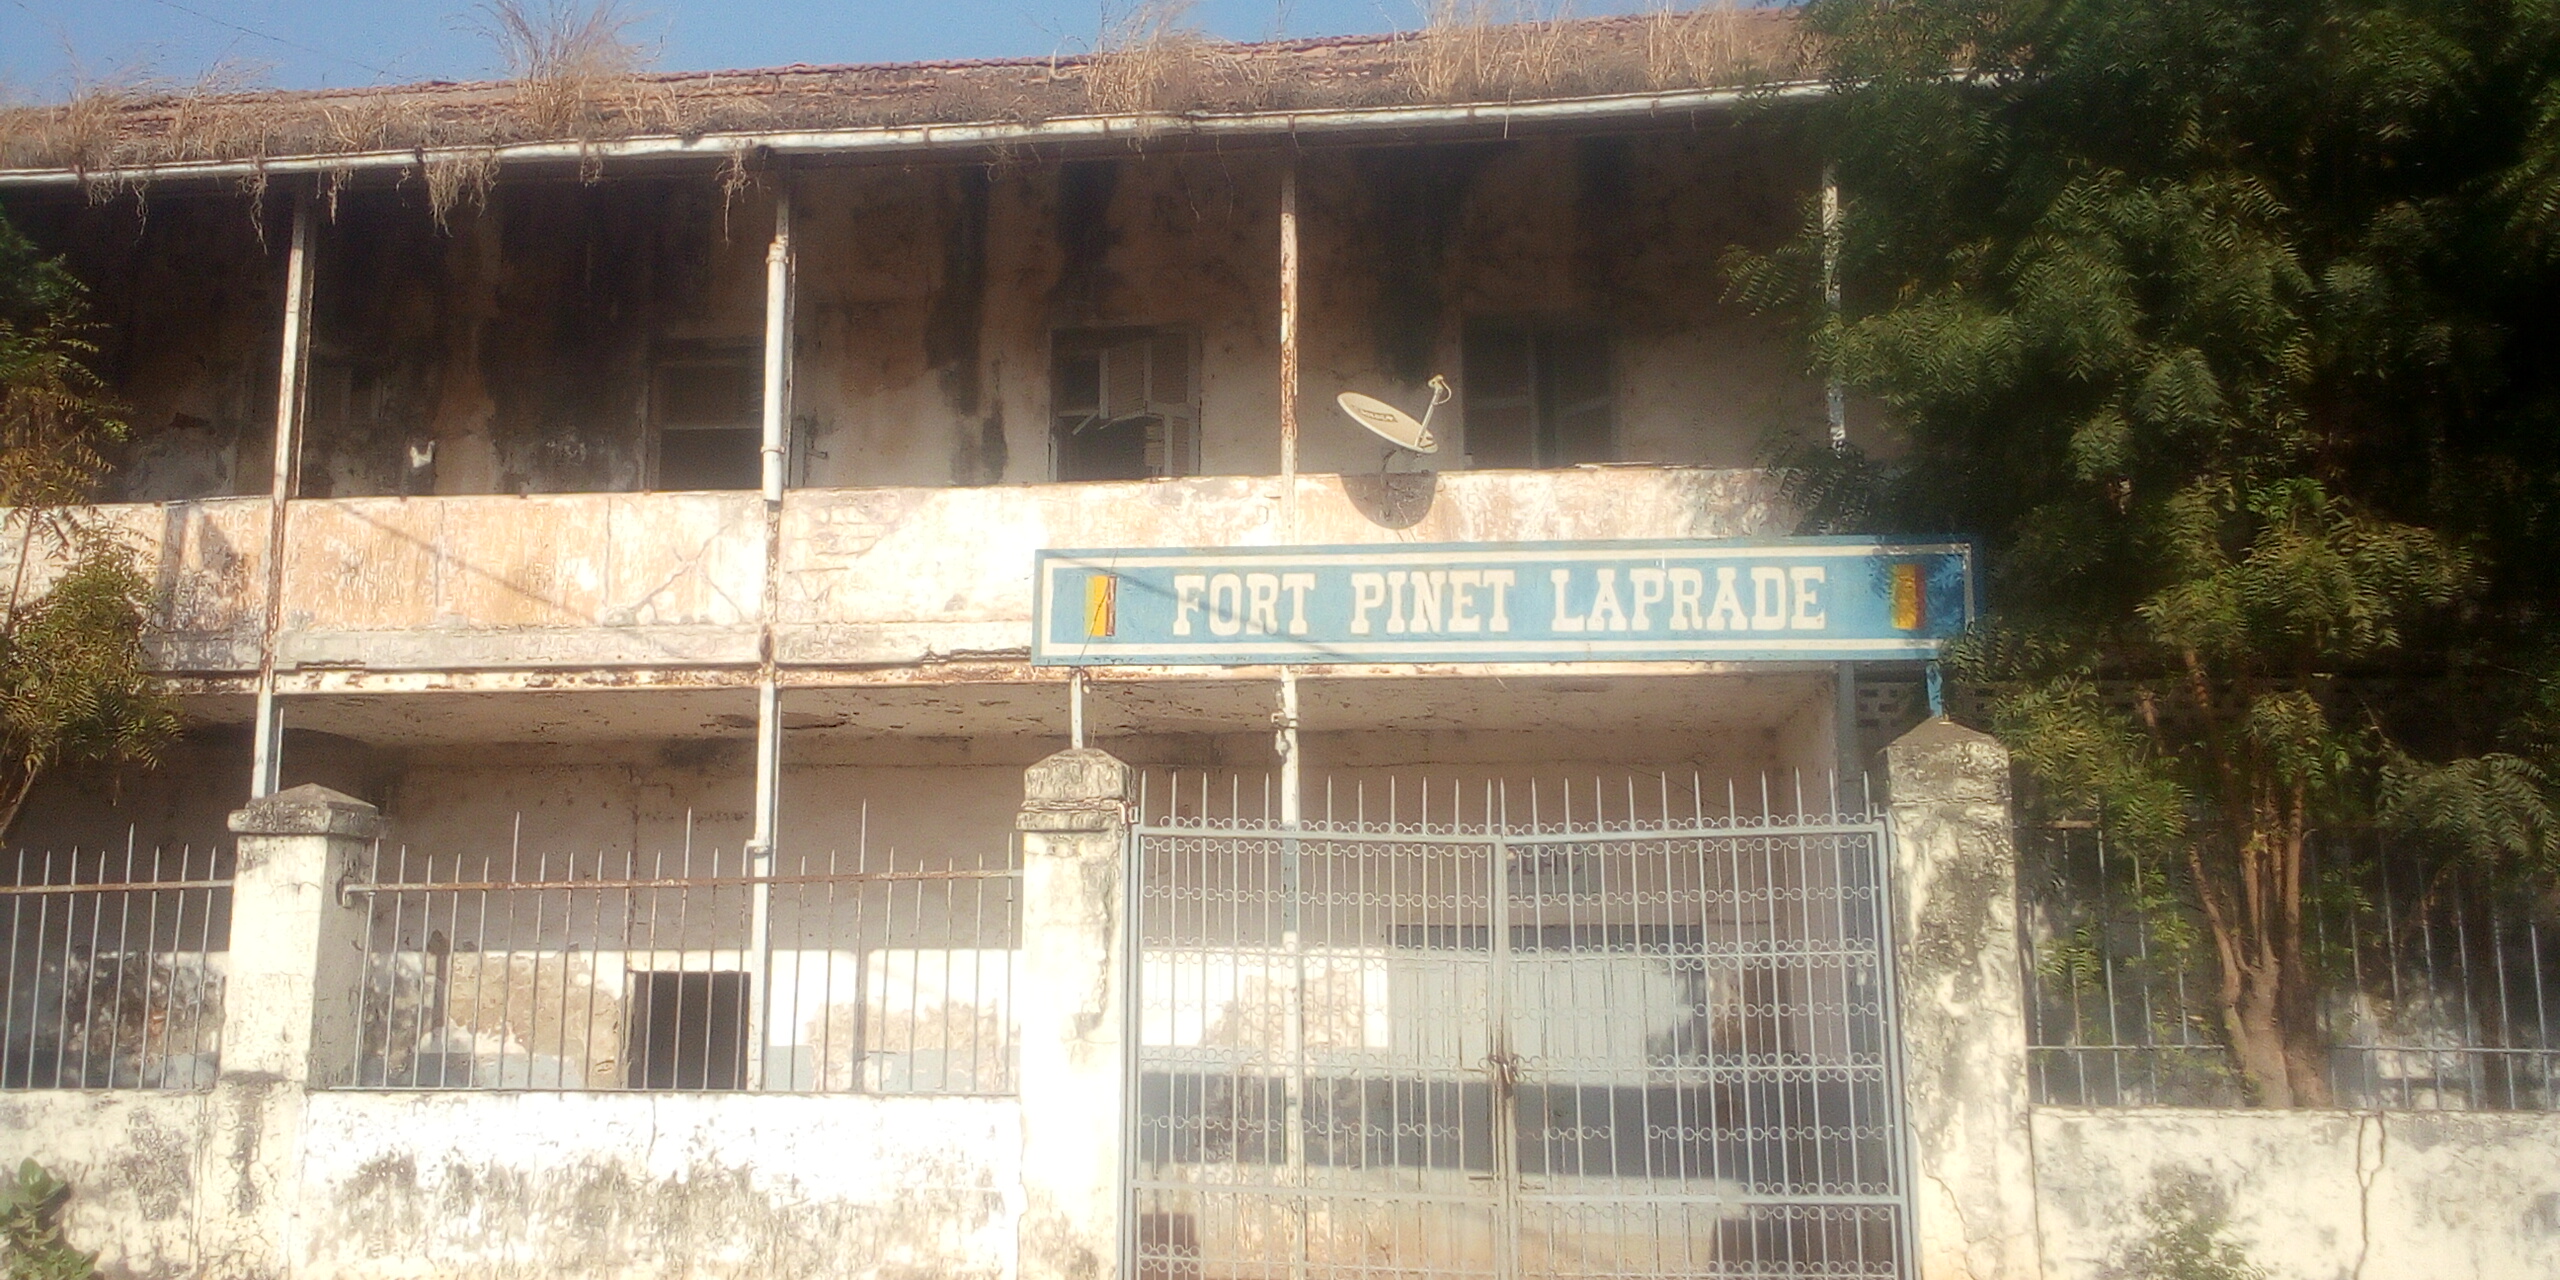 Conseil des ministres de Sédhiou : à la découverte du Fort Pinet Laprade...